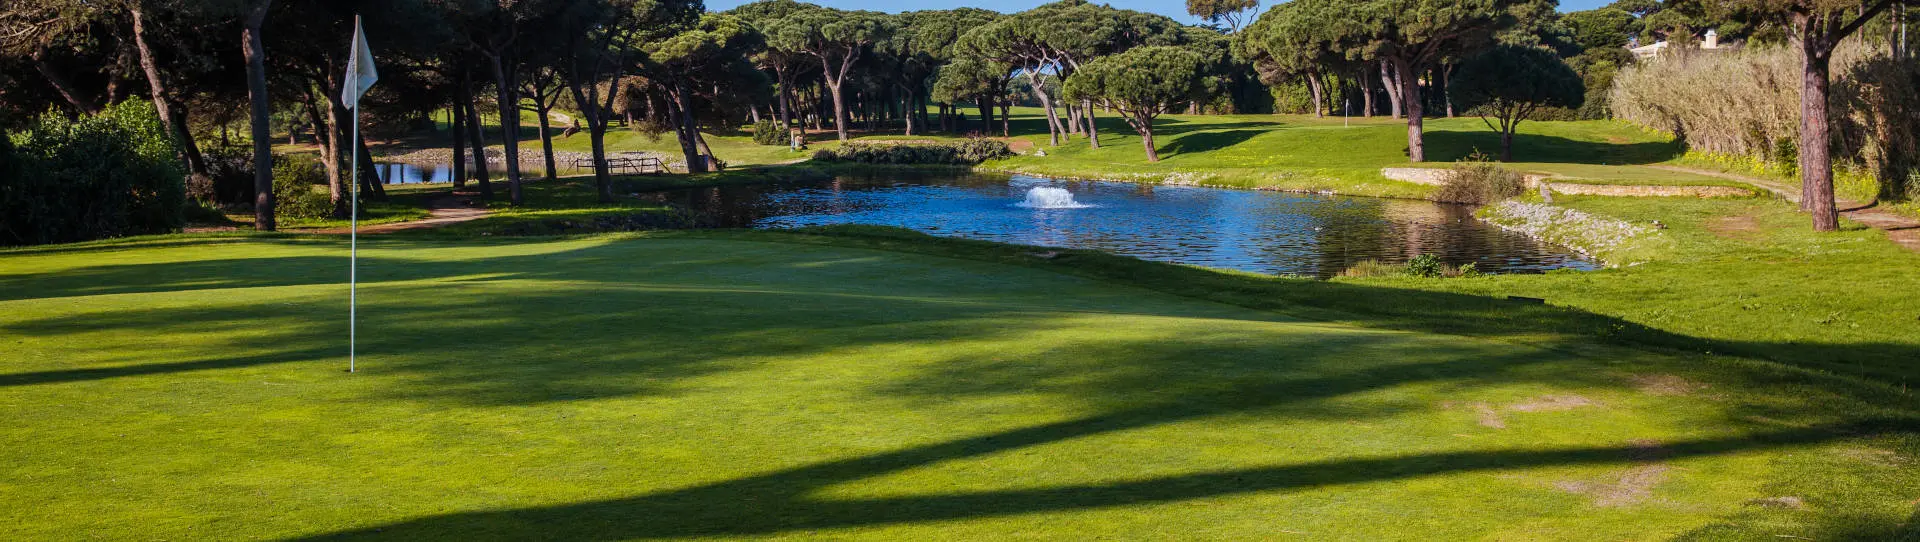 Portugal golf courses - Quinta da Marinha - Photo 2